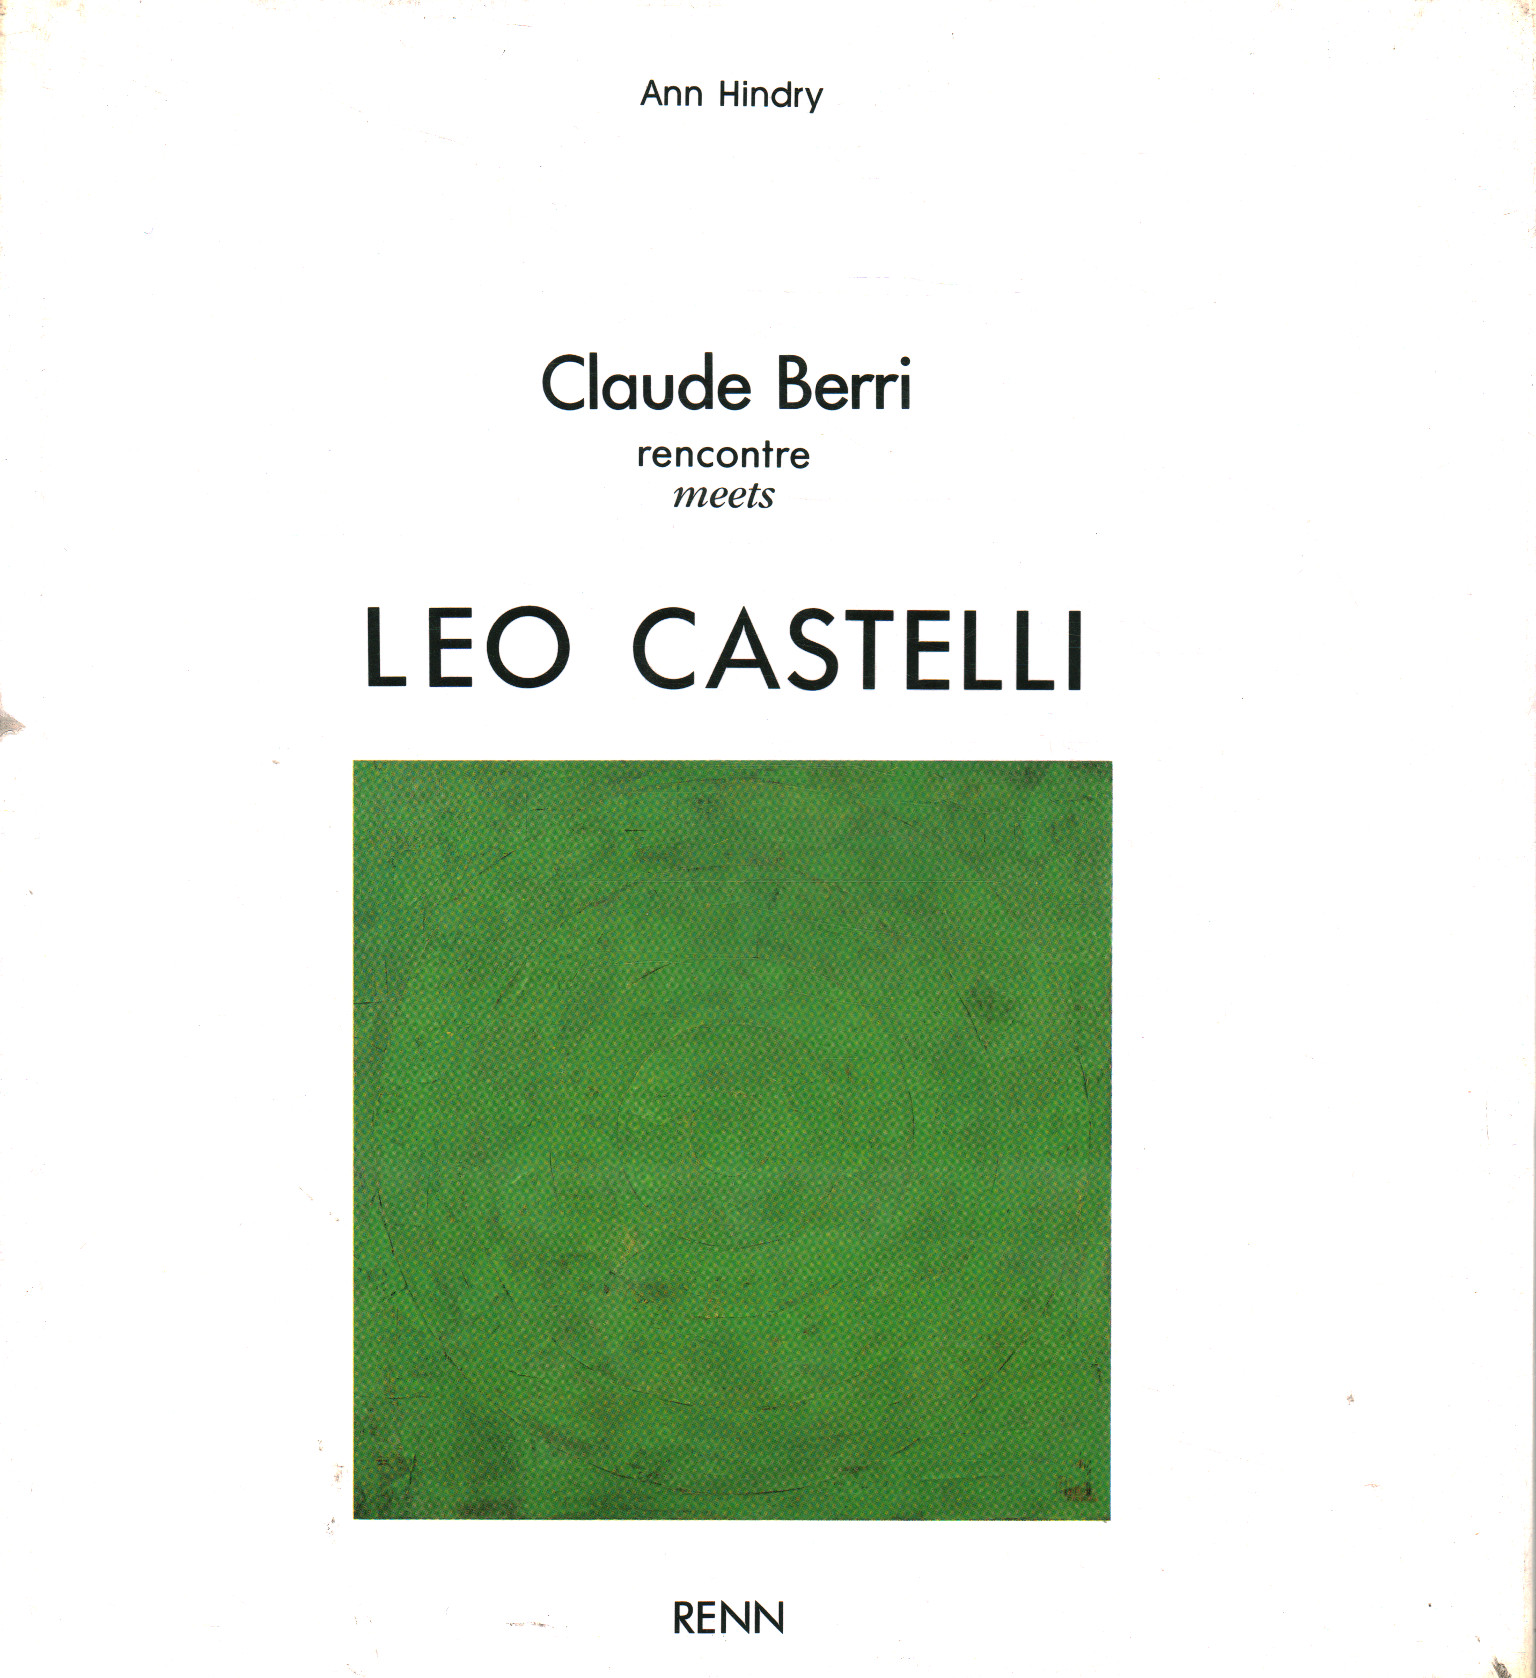 Rencontre Claude Berri rencontre Léo Castell